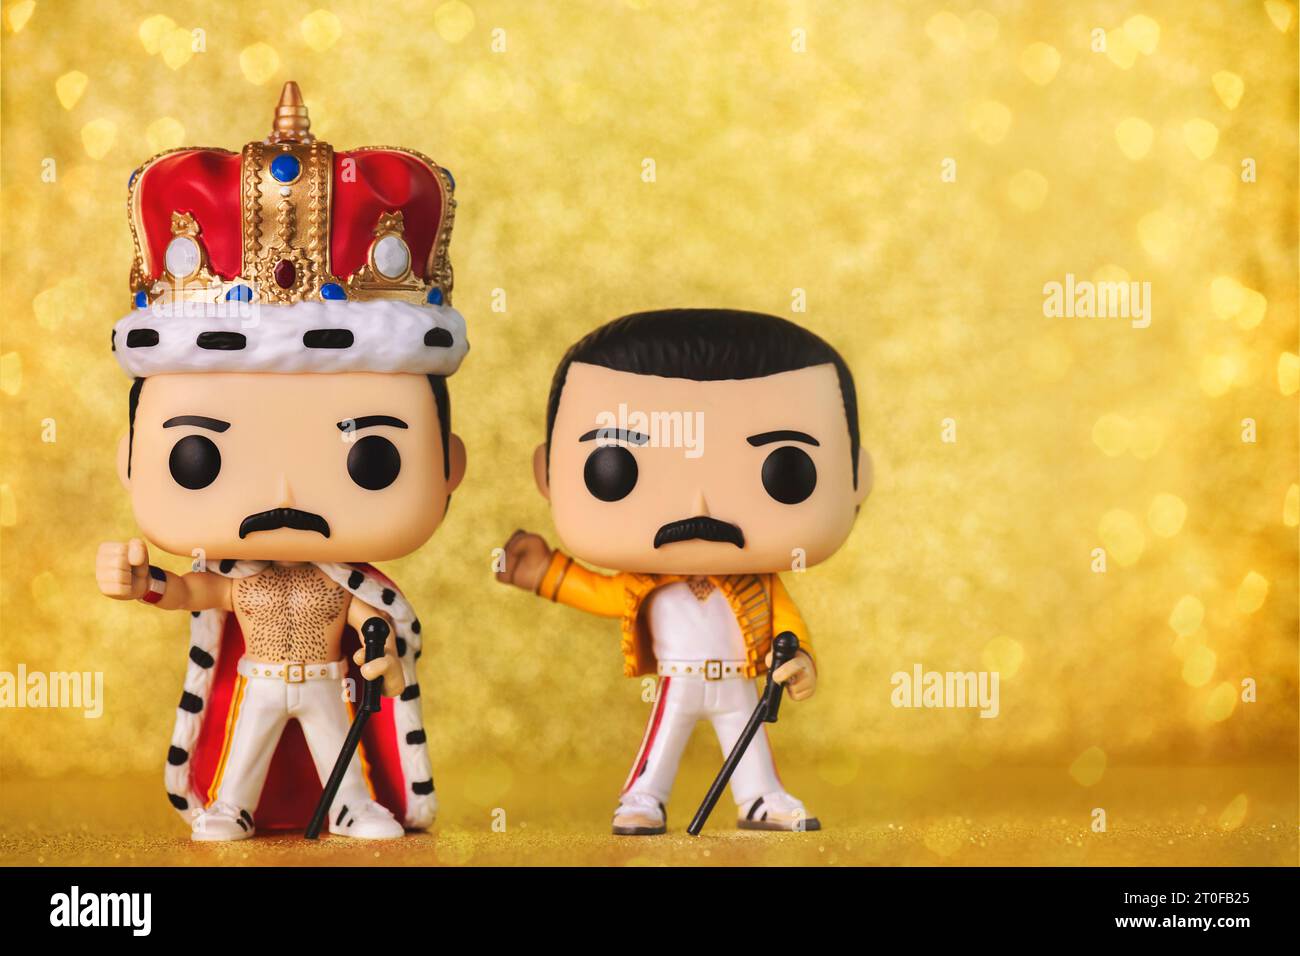 Funko POP in vinile figure di Freddie Mercury cantante del gruppo musicale britannico Queen su sfondo dorato. Editoriale illustrativo di Funko Pop AC Foto Stock